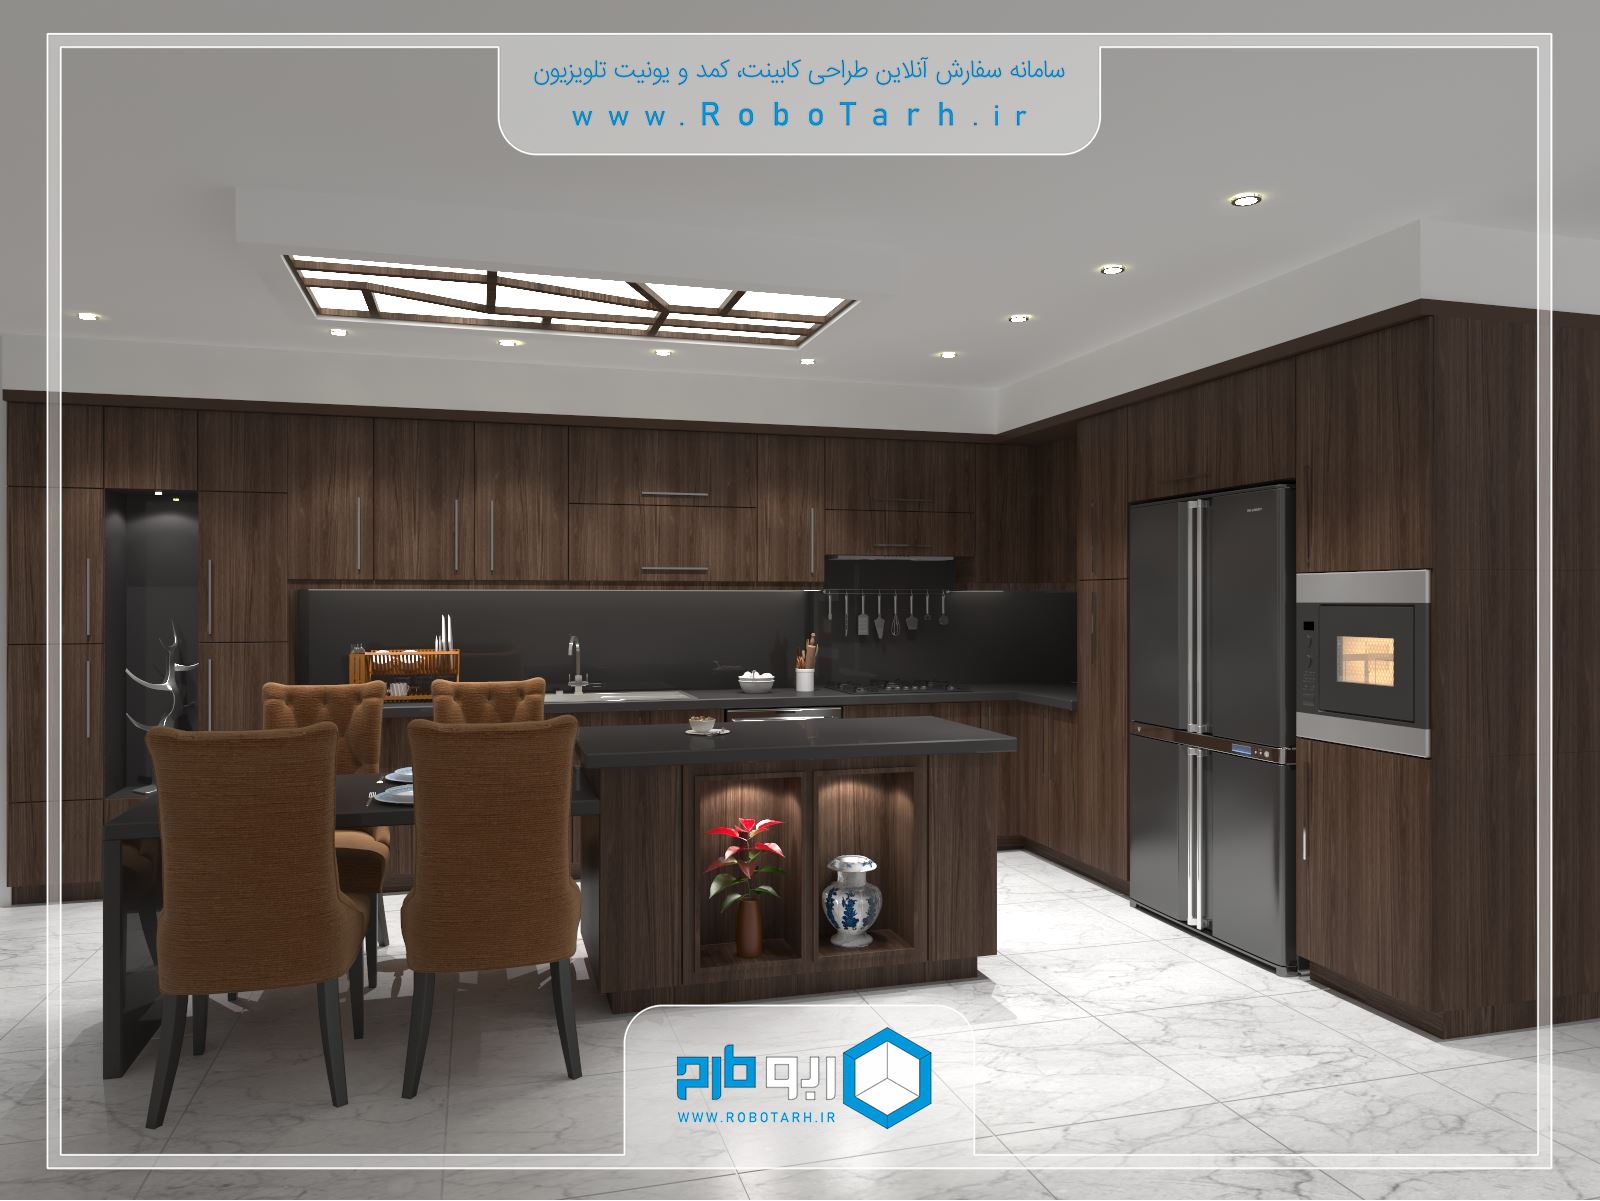 طراحی کابینت آشپزخانه قهوه ای و مشکی رنگ به سبک مدرن با چیدمان ال شکل - ربوطرح